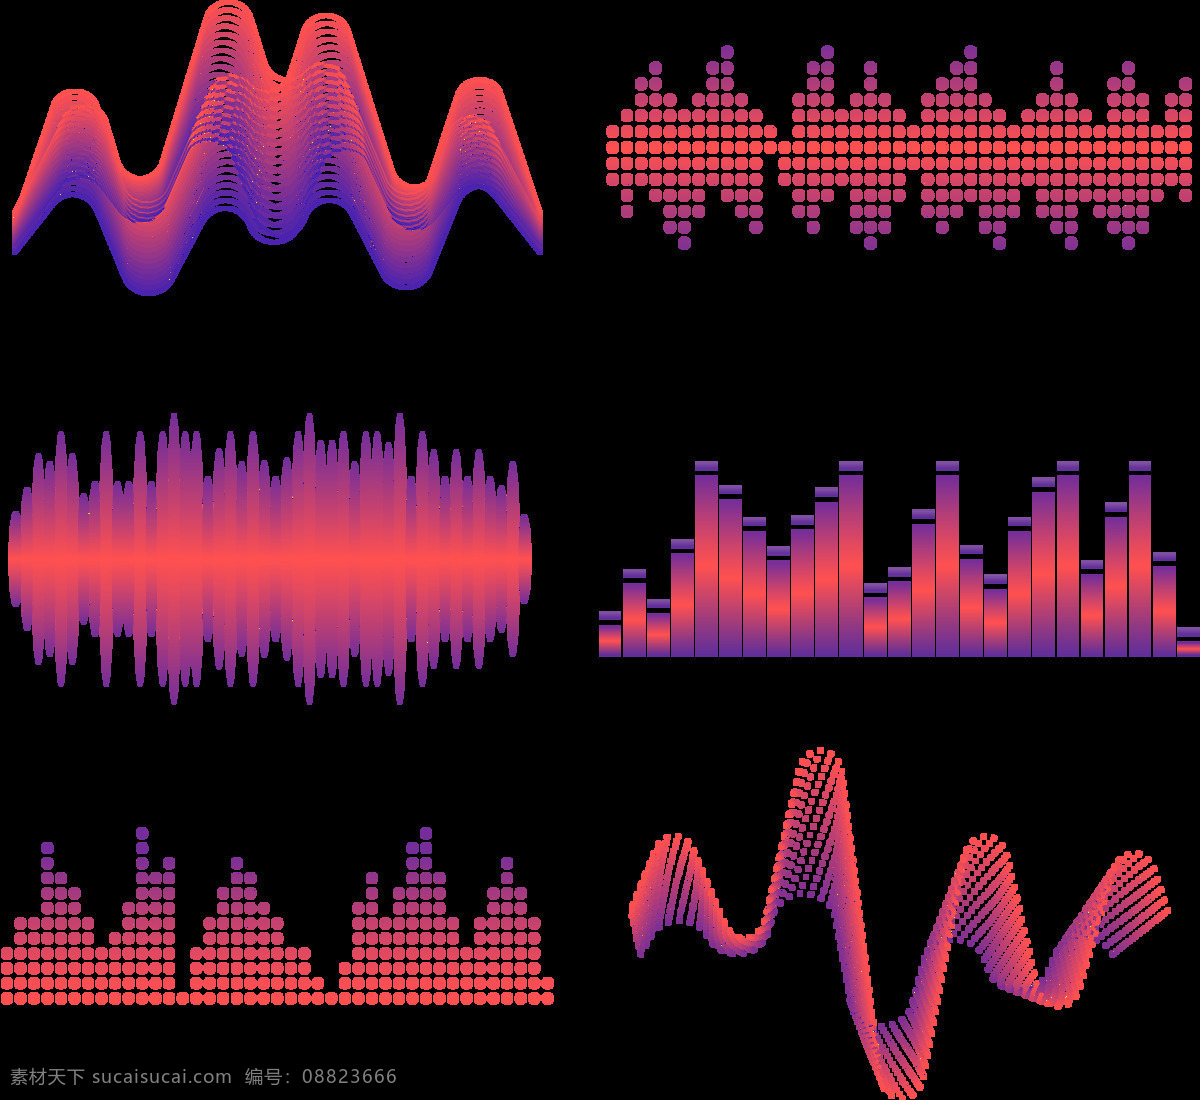 红色 抽象 声波 图案 免 抠 透明 图 层 音乐声波 声音波 均衡器 曲线 音量 显示 背景 音乐素材 线条 声波图形 声音波形 声波素材 音波线条 素材声音 音乐符号